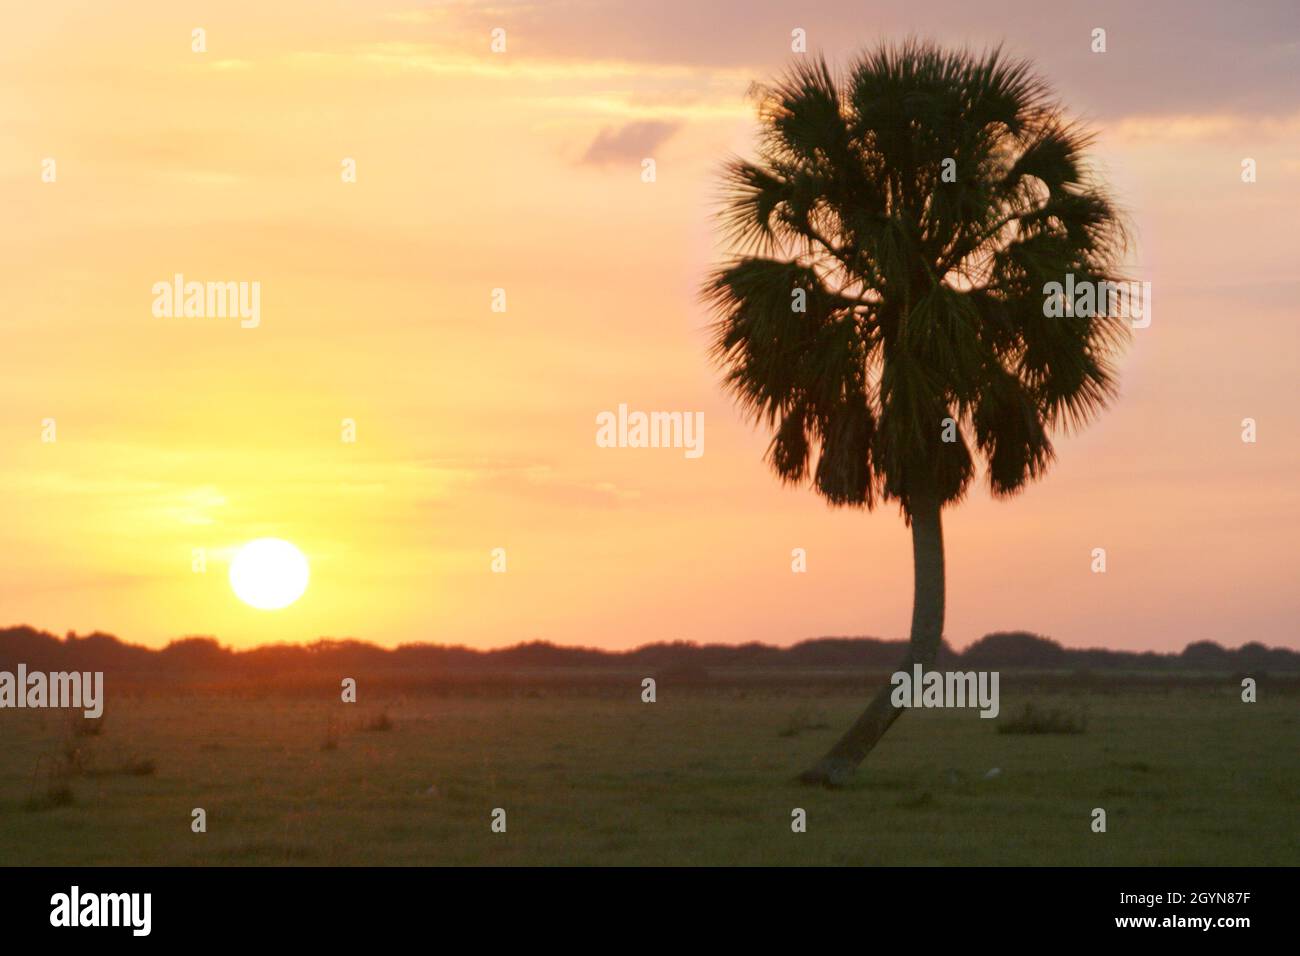 Florida Okeechobee County, sabal palmier palmier, coucher de soleil paysage nature naturelle le long de l'US 98 Banque D'Images